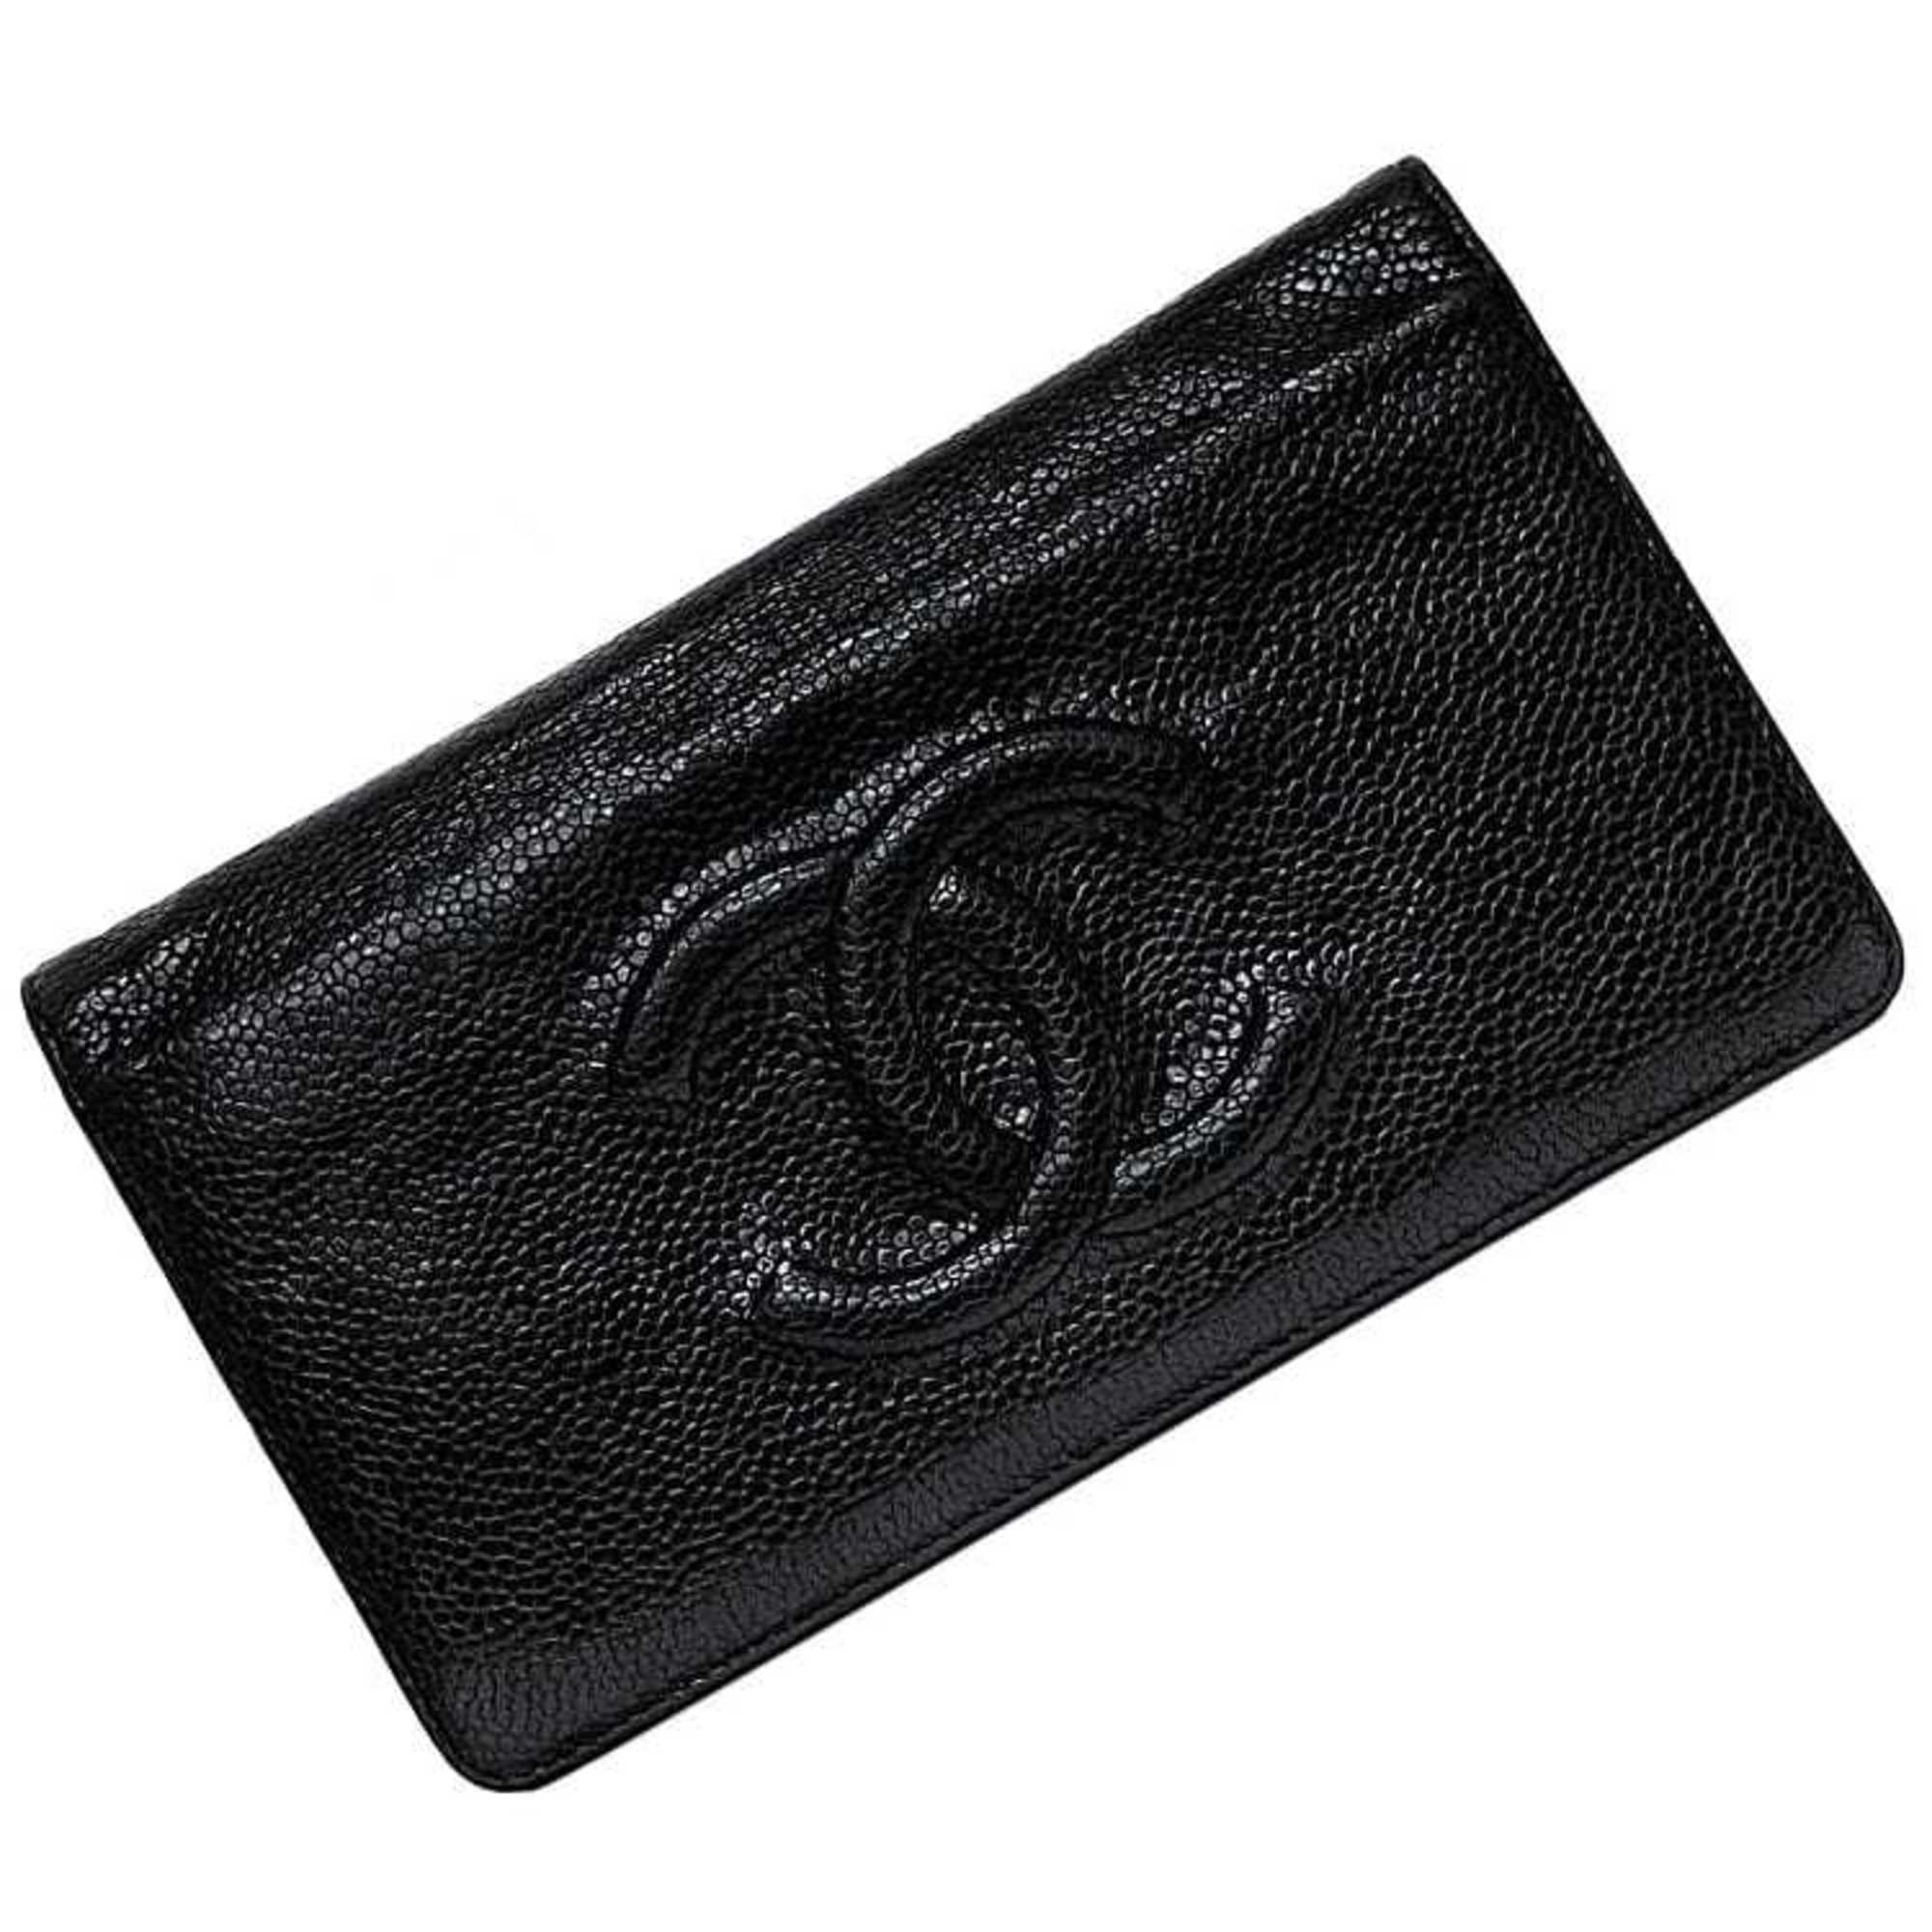 Bi-fold Long Wallet Black Mark Ec-19907 16 Series Leather Caviar 16048431 Folding Women's